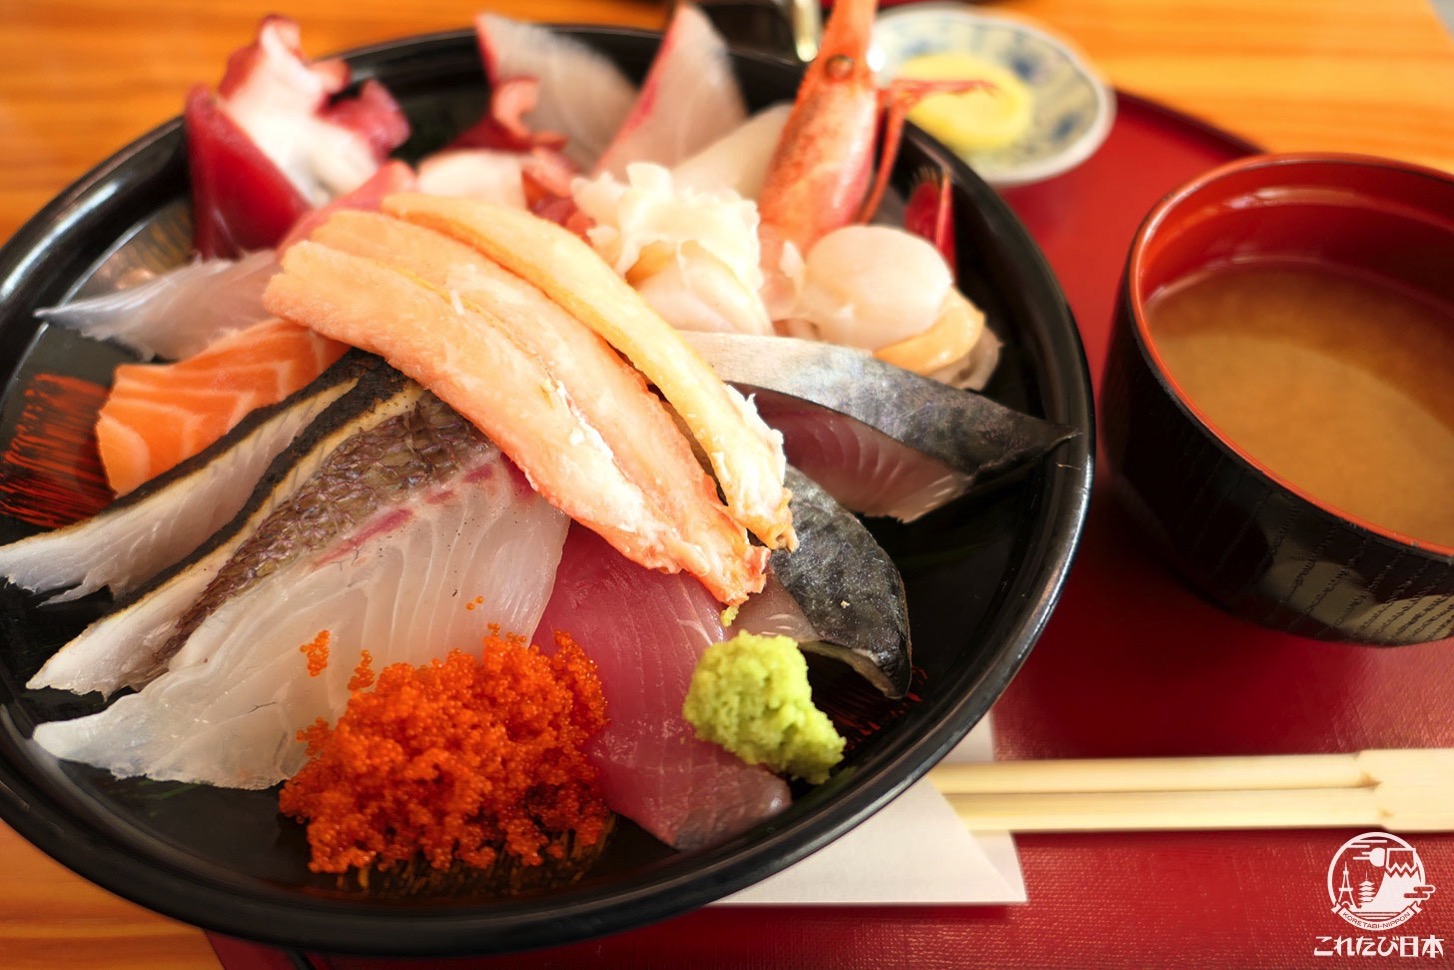 鯛喜 鳥取砂丘 の海鮮丼は記憶に残る激旨グルメ 予約必須の名店 これたび日本